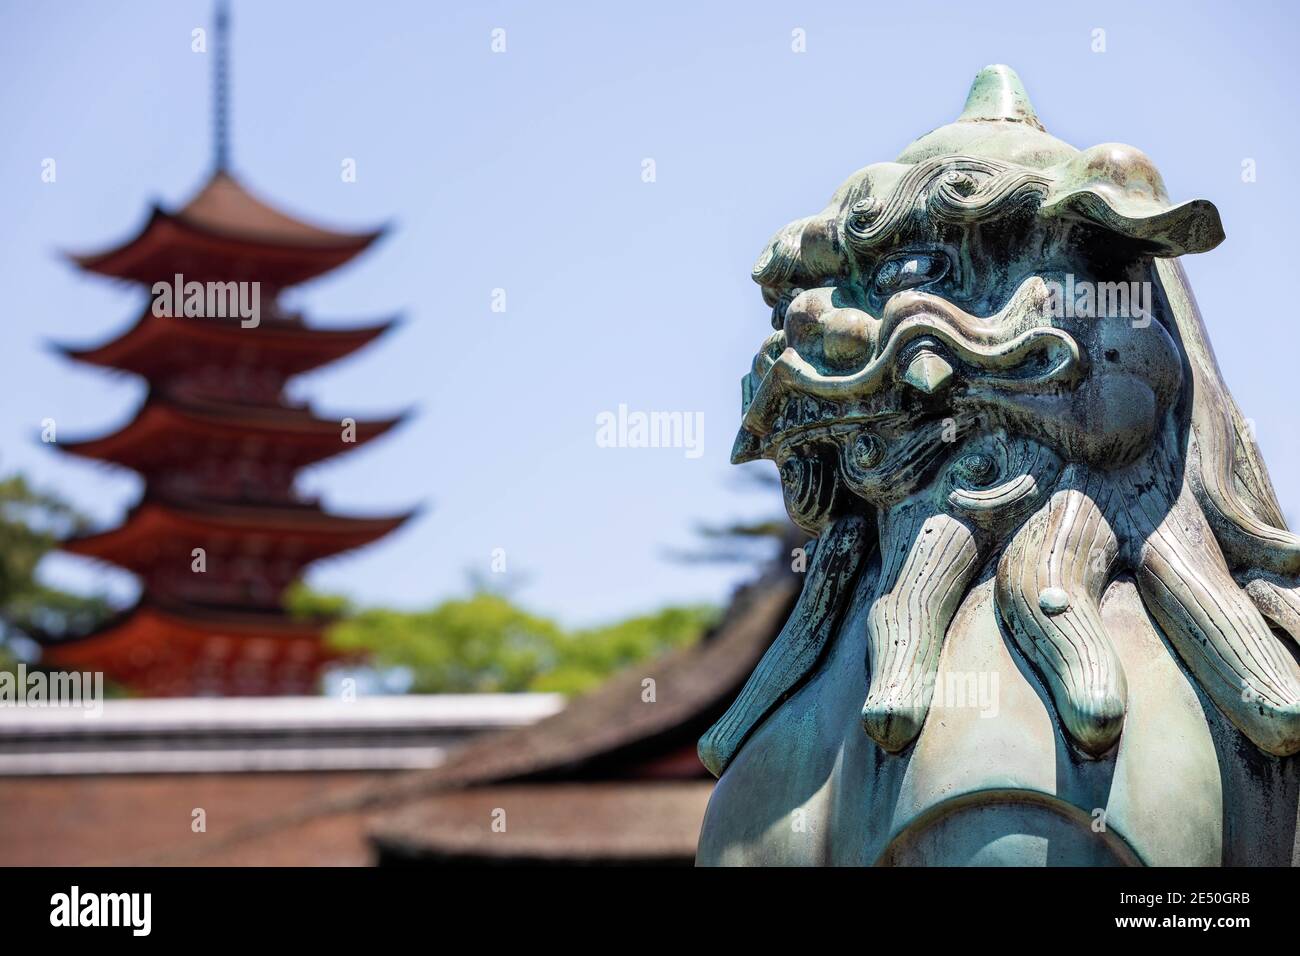 Primo piano di una statua di bronzo di un leone giapponese, con un pagod rosso sullo sfondo Foto Stock